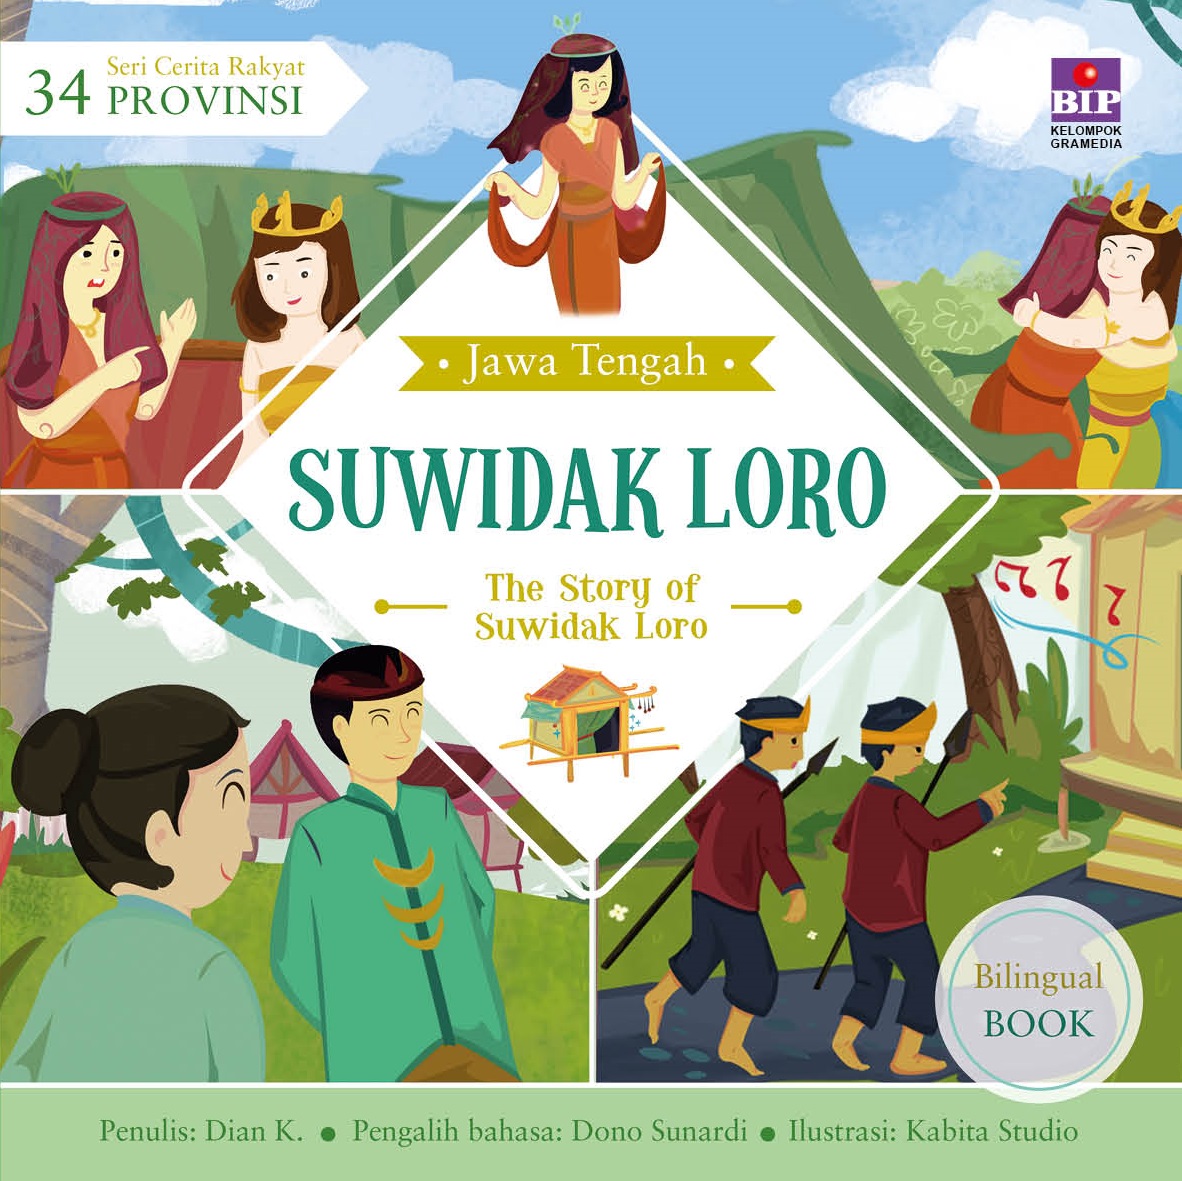 Seri Cerita Rakyat 34 Provinsi: Suwidak Loro